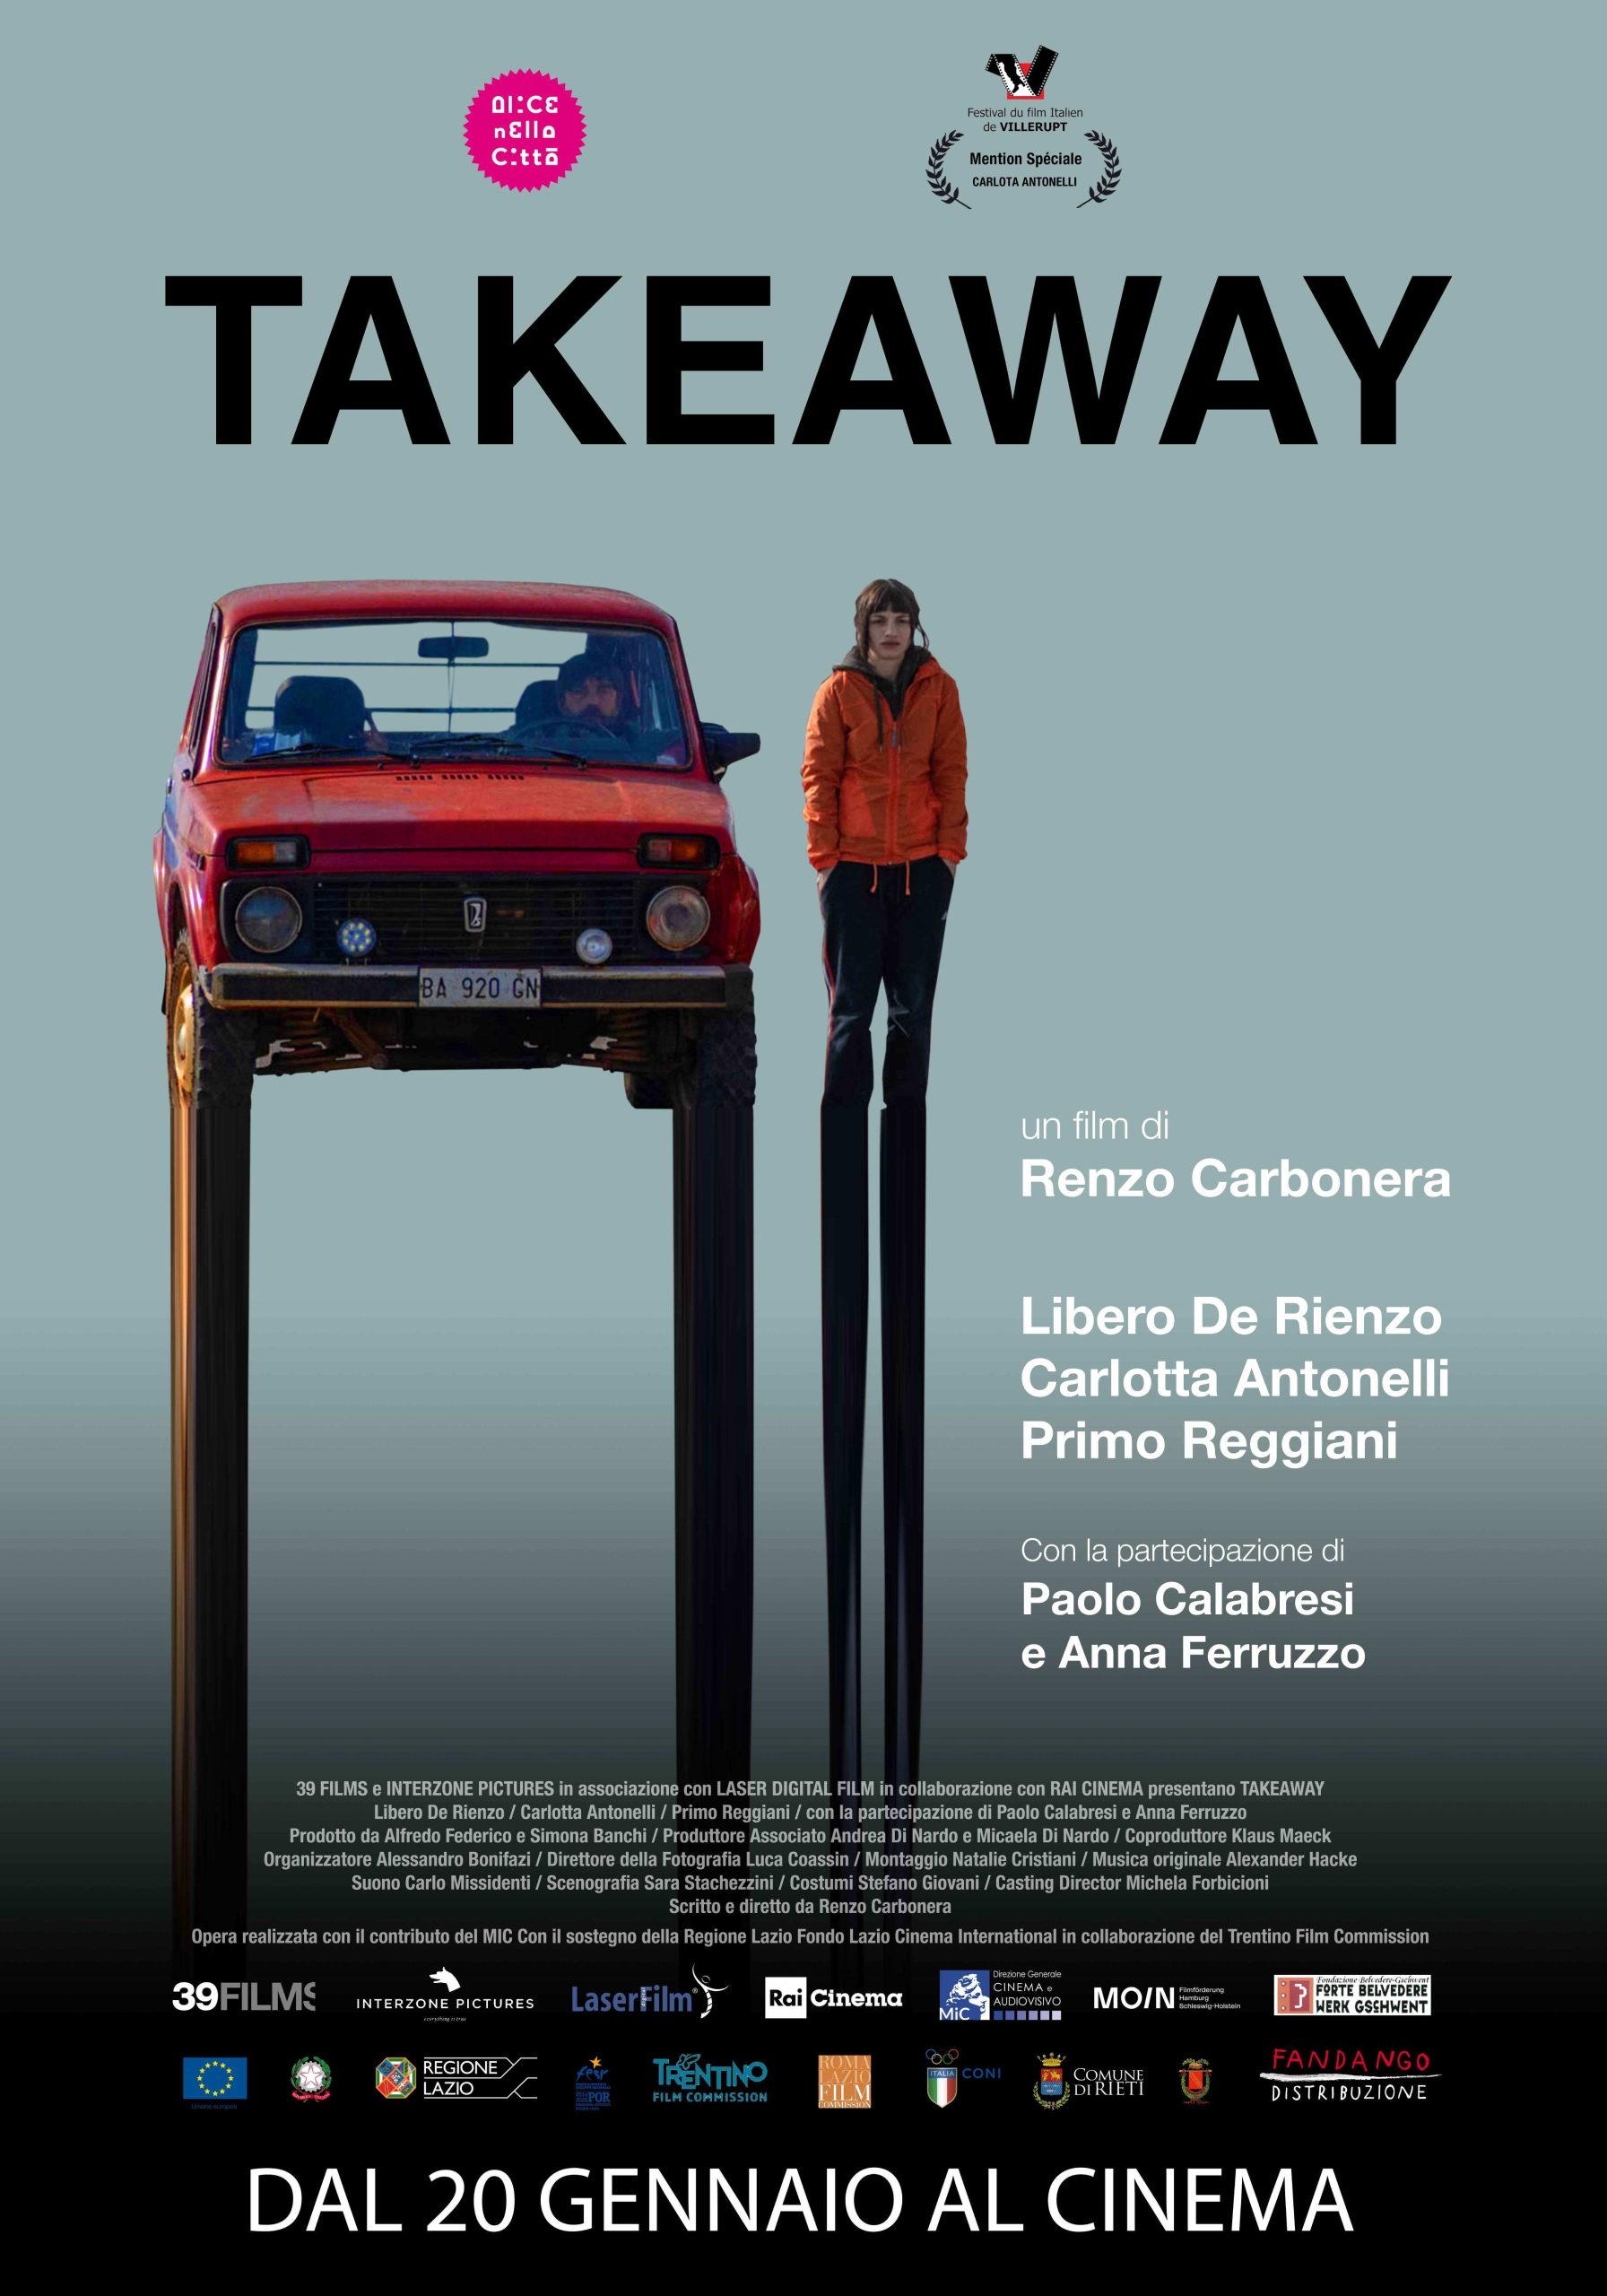 Al momento stai visualizzando Il regista friulano Renzo Carbonera accompagnerà il film “Takeaway” a Udine e Pordenone (sabato 5 febbraio), poi a Gorizia e Trieste (domenica 6 febbraio)